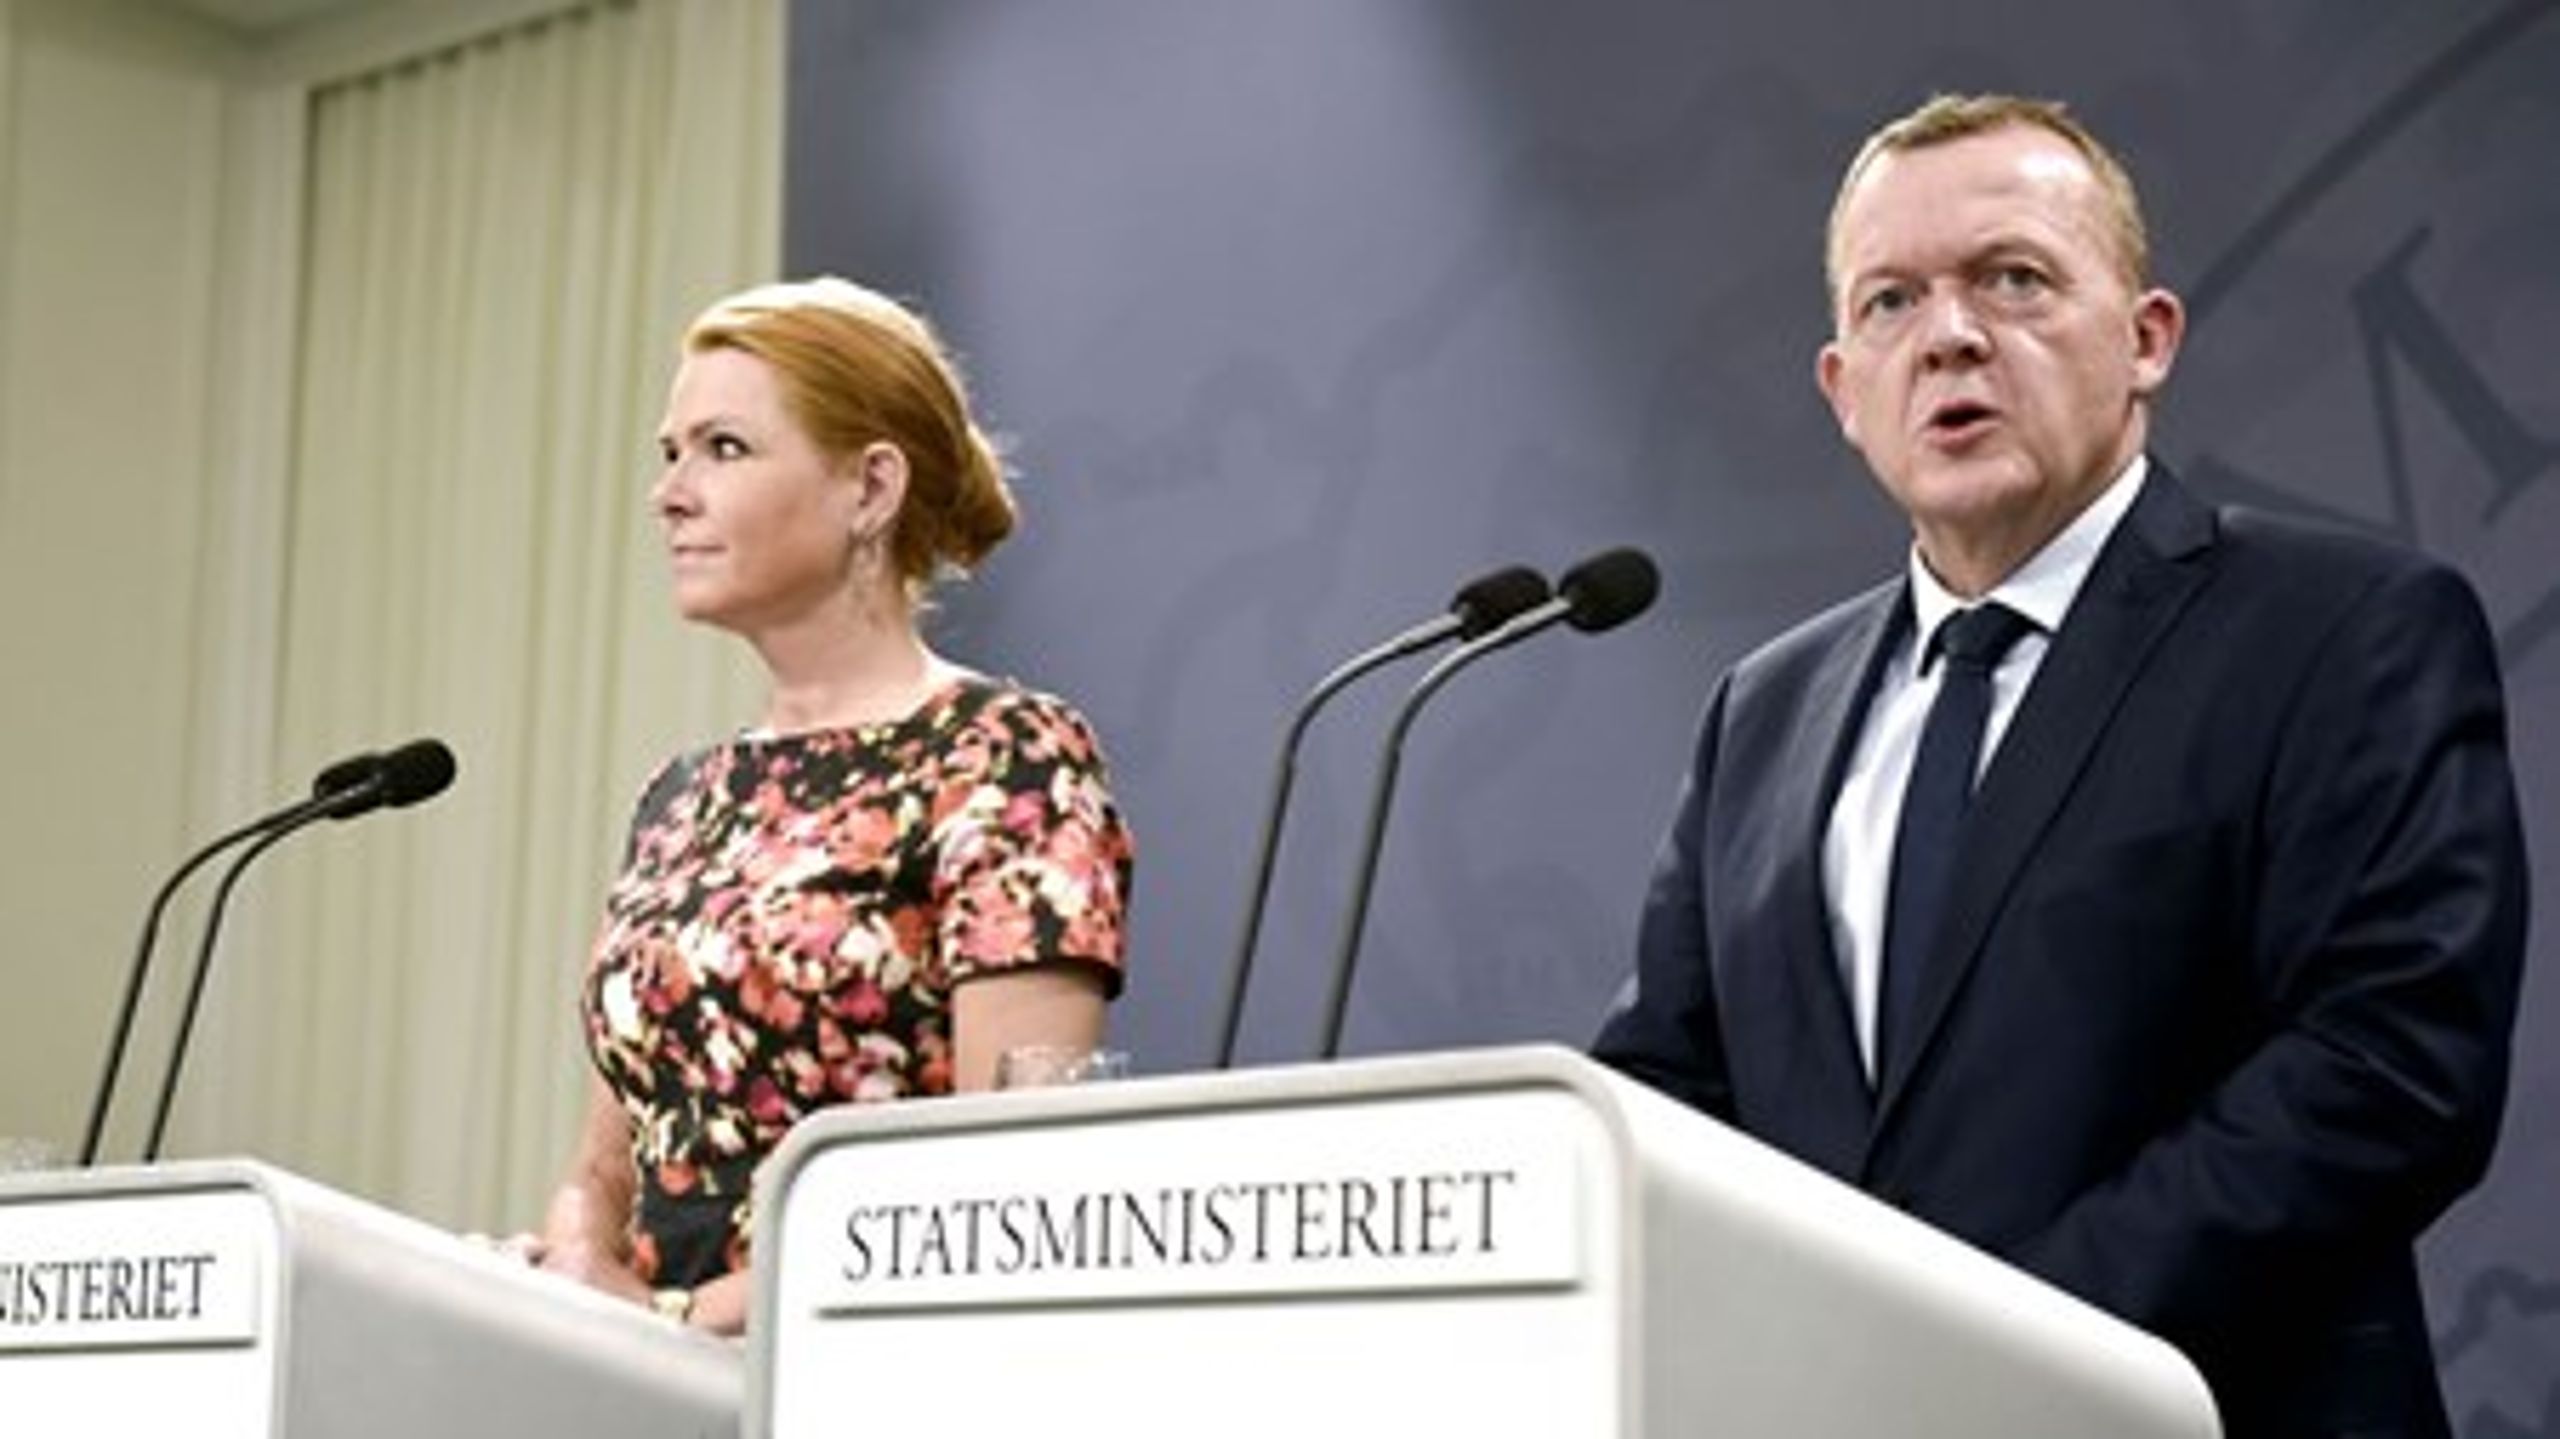 På sigt skal der komme færre flygtninge til Danmark. Derfor vil regeringen nu tage imod 1000 flygtninge, for at sætte skub i processen i EU, fortæller Inger Støjberg.